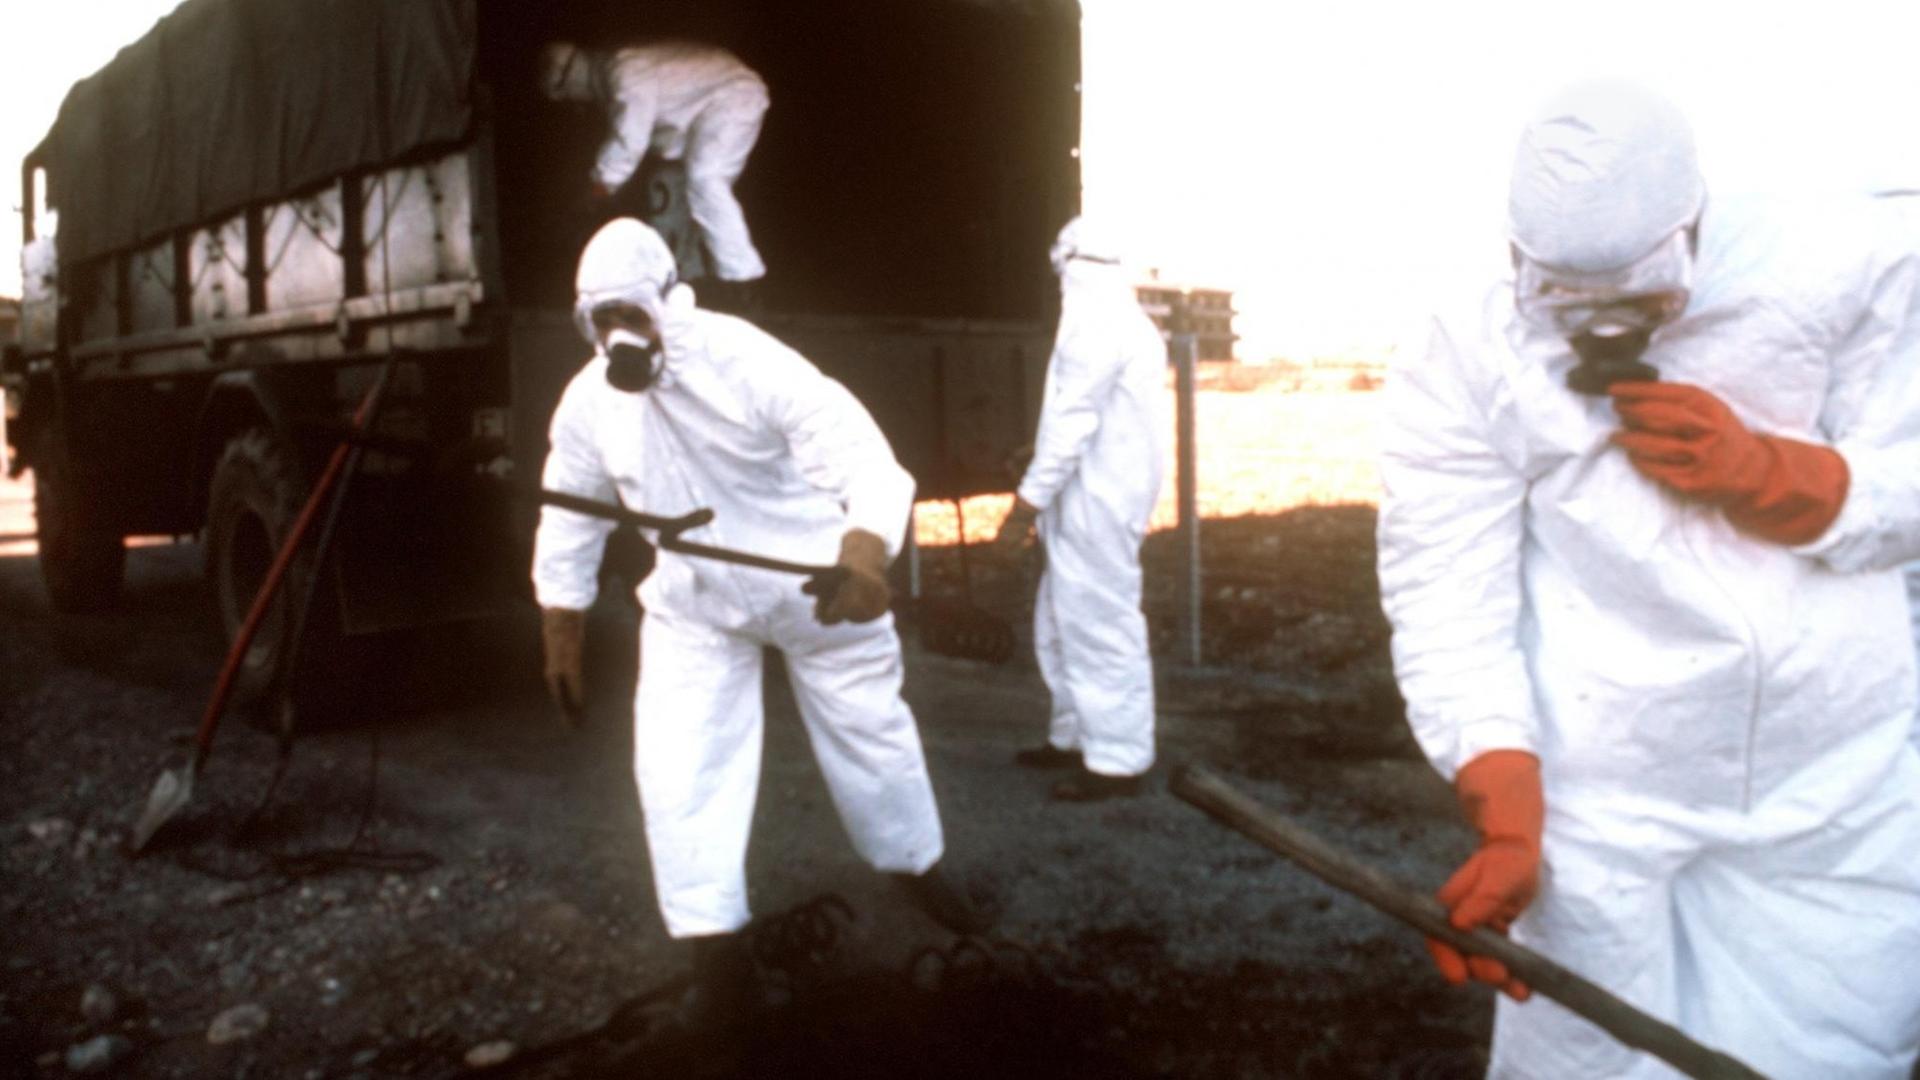 Folgen des Seveso-Unglücks am 10. Juli 1976: Spezialisten in Schutzanzügen sind auf dem Weg in das verseuchte Gebiet, um Pflanzen- und Bodenproben zu entnehmen und sie auf Rückstände zu untersuchen.